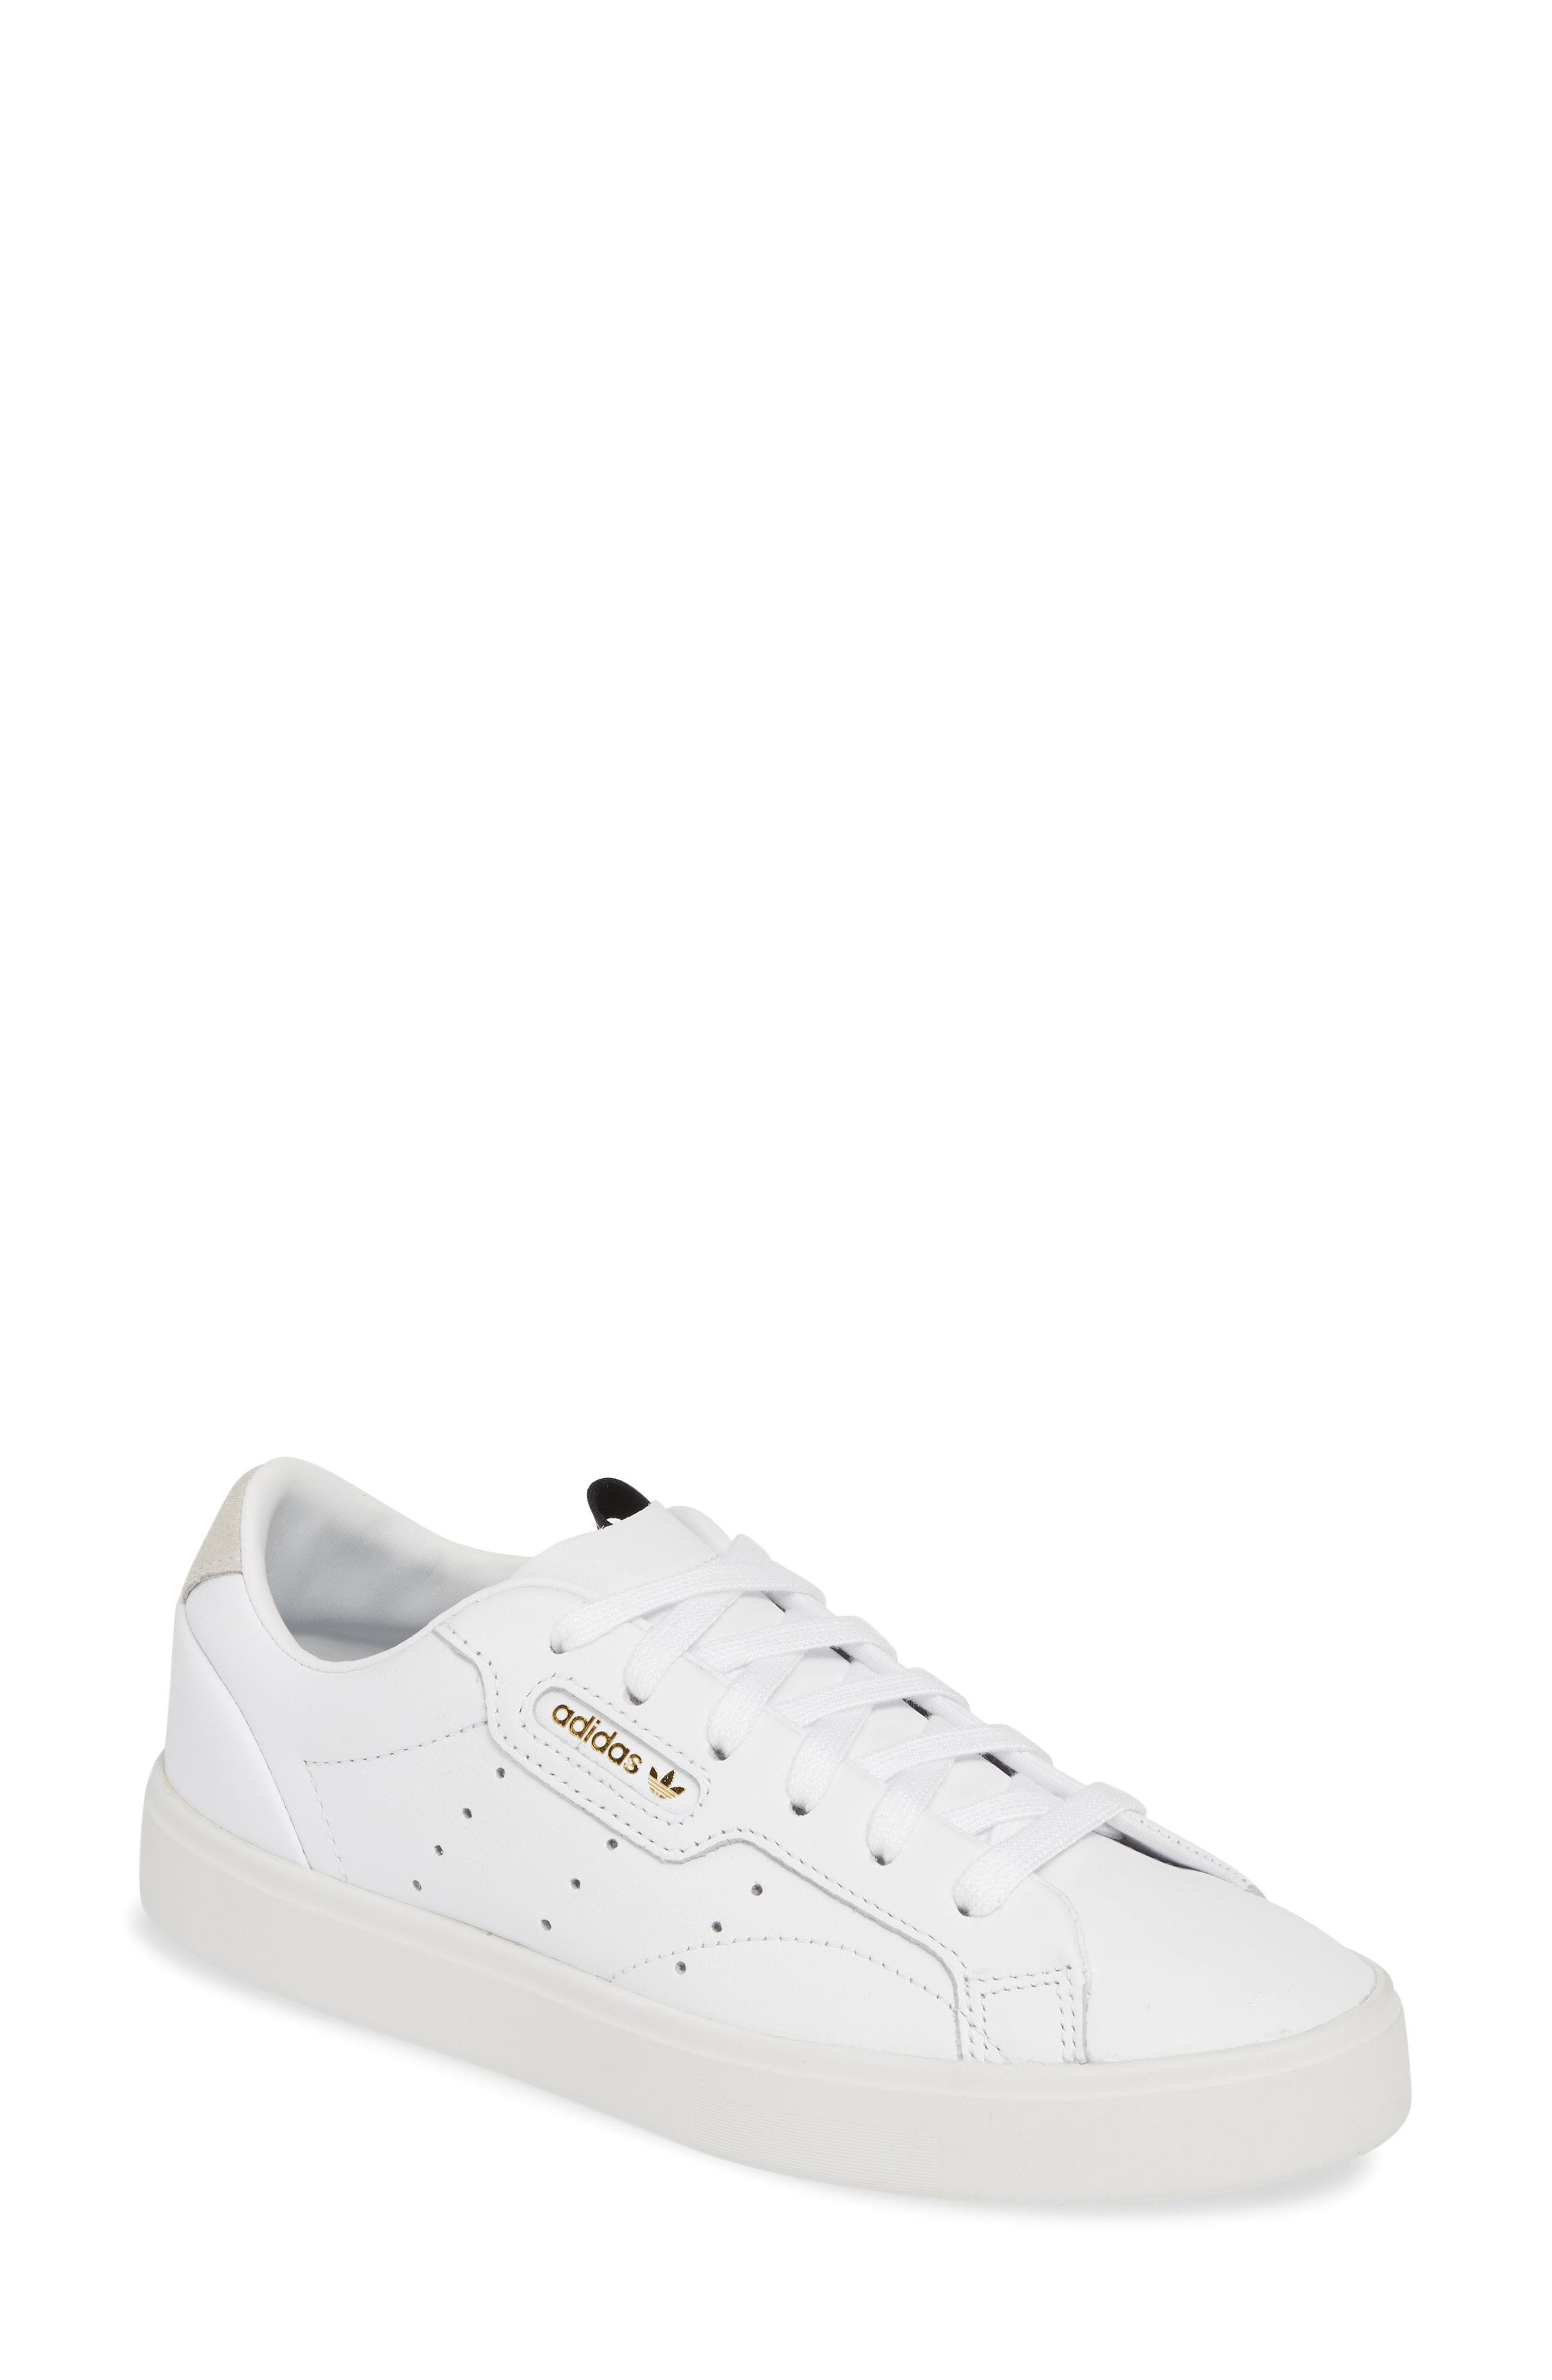 adidas sleek leather sneaker white